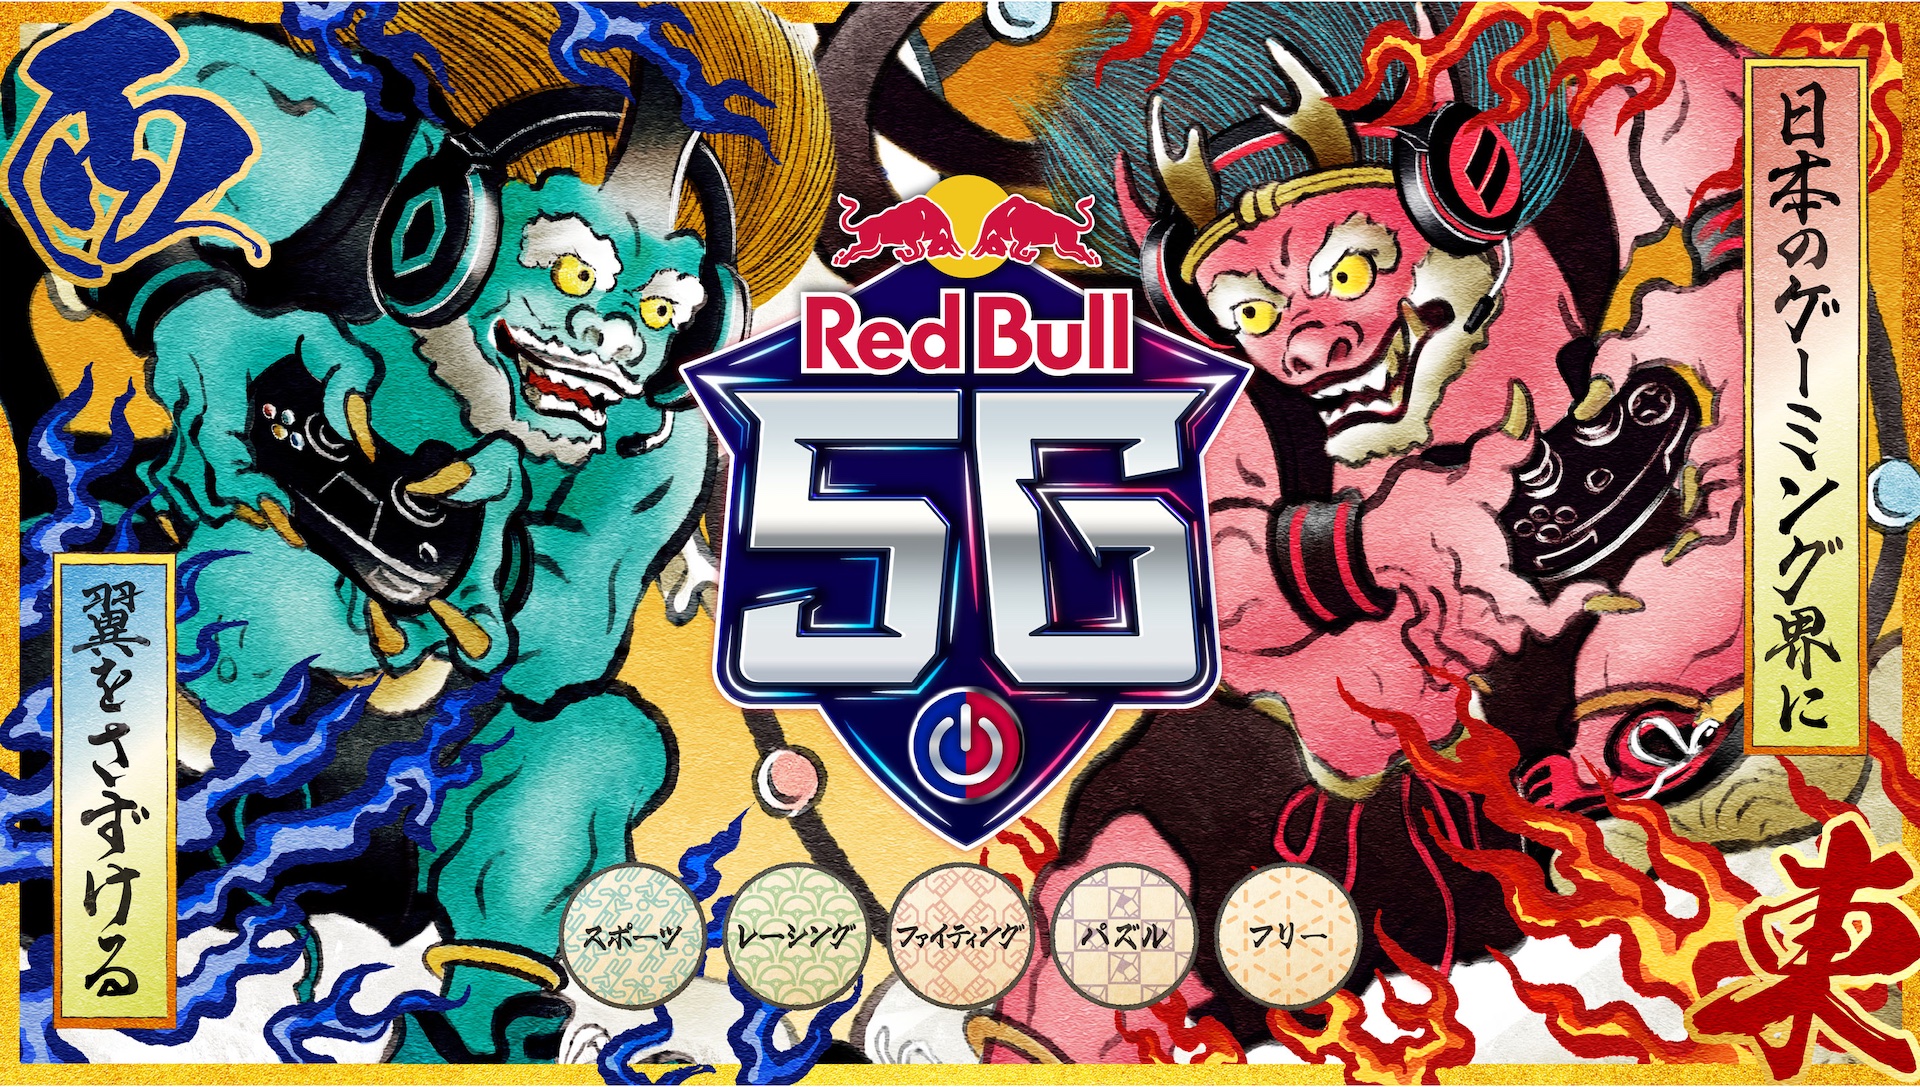 レッドブル、eスポーツイベント「Red Bull 5G」が5年ぶりに開催決定